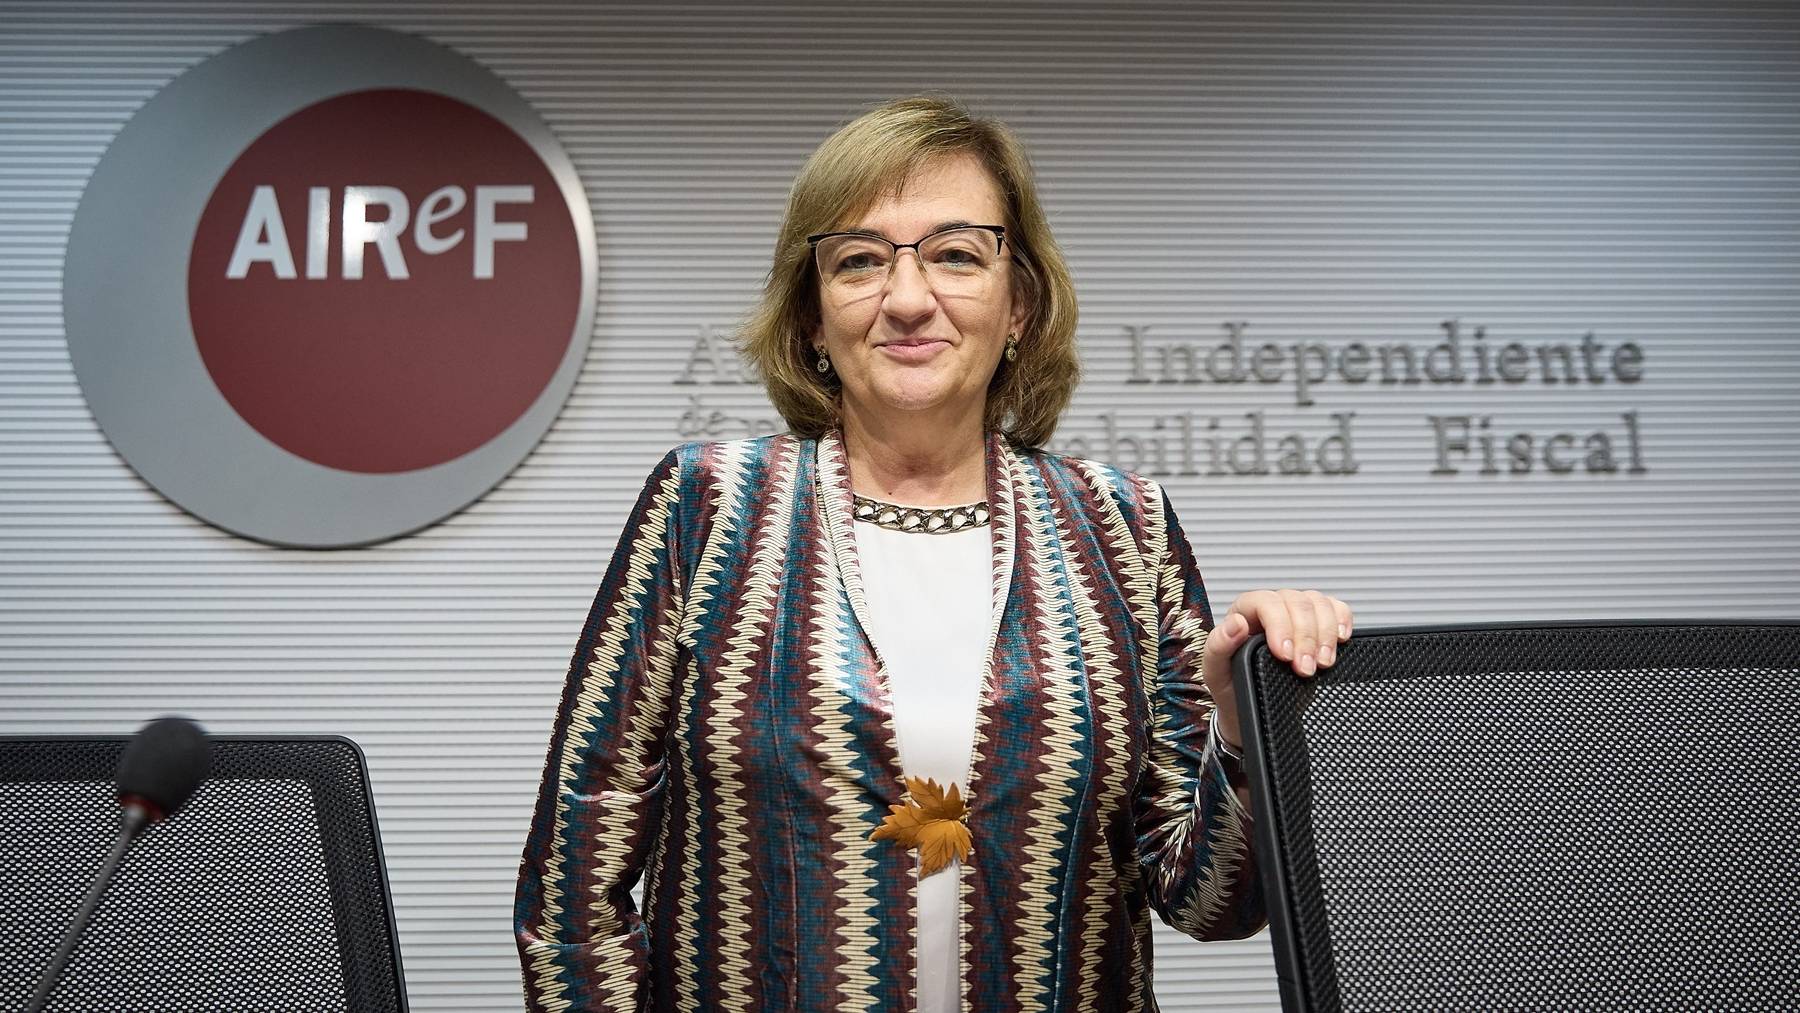 Cristina Herrero, presidenta de la AIReF, afea el Plan de Reequilibrio de Hacienda por no ajustarse a la Ley.